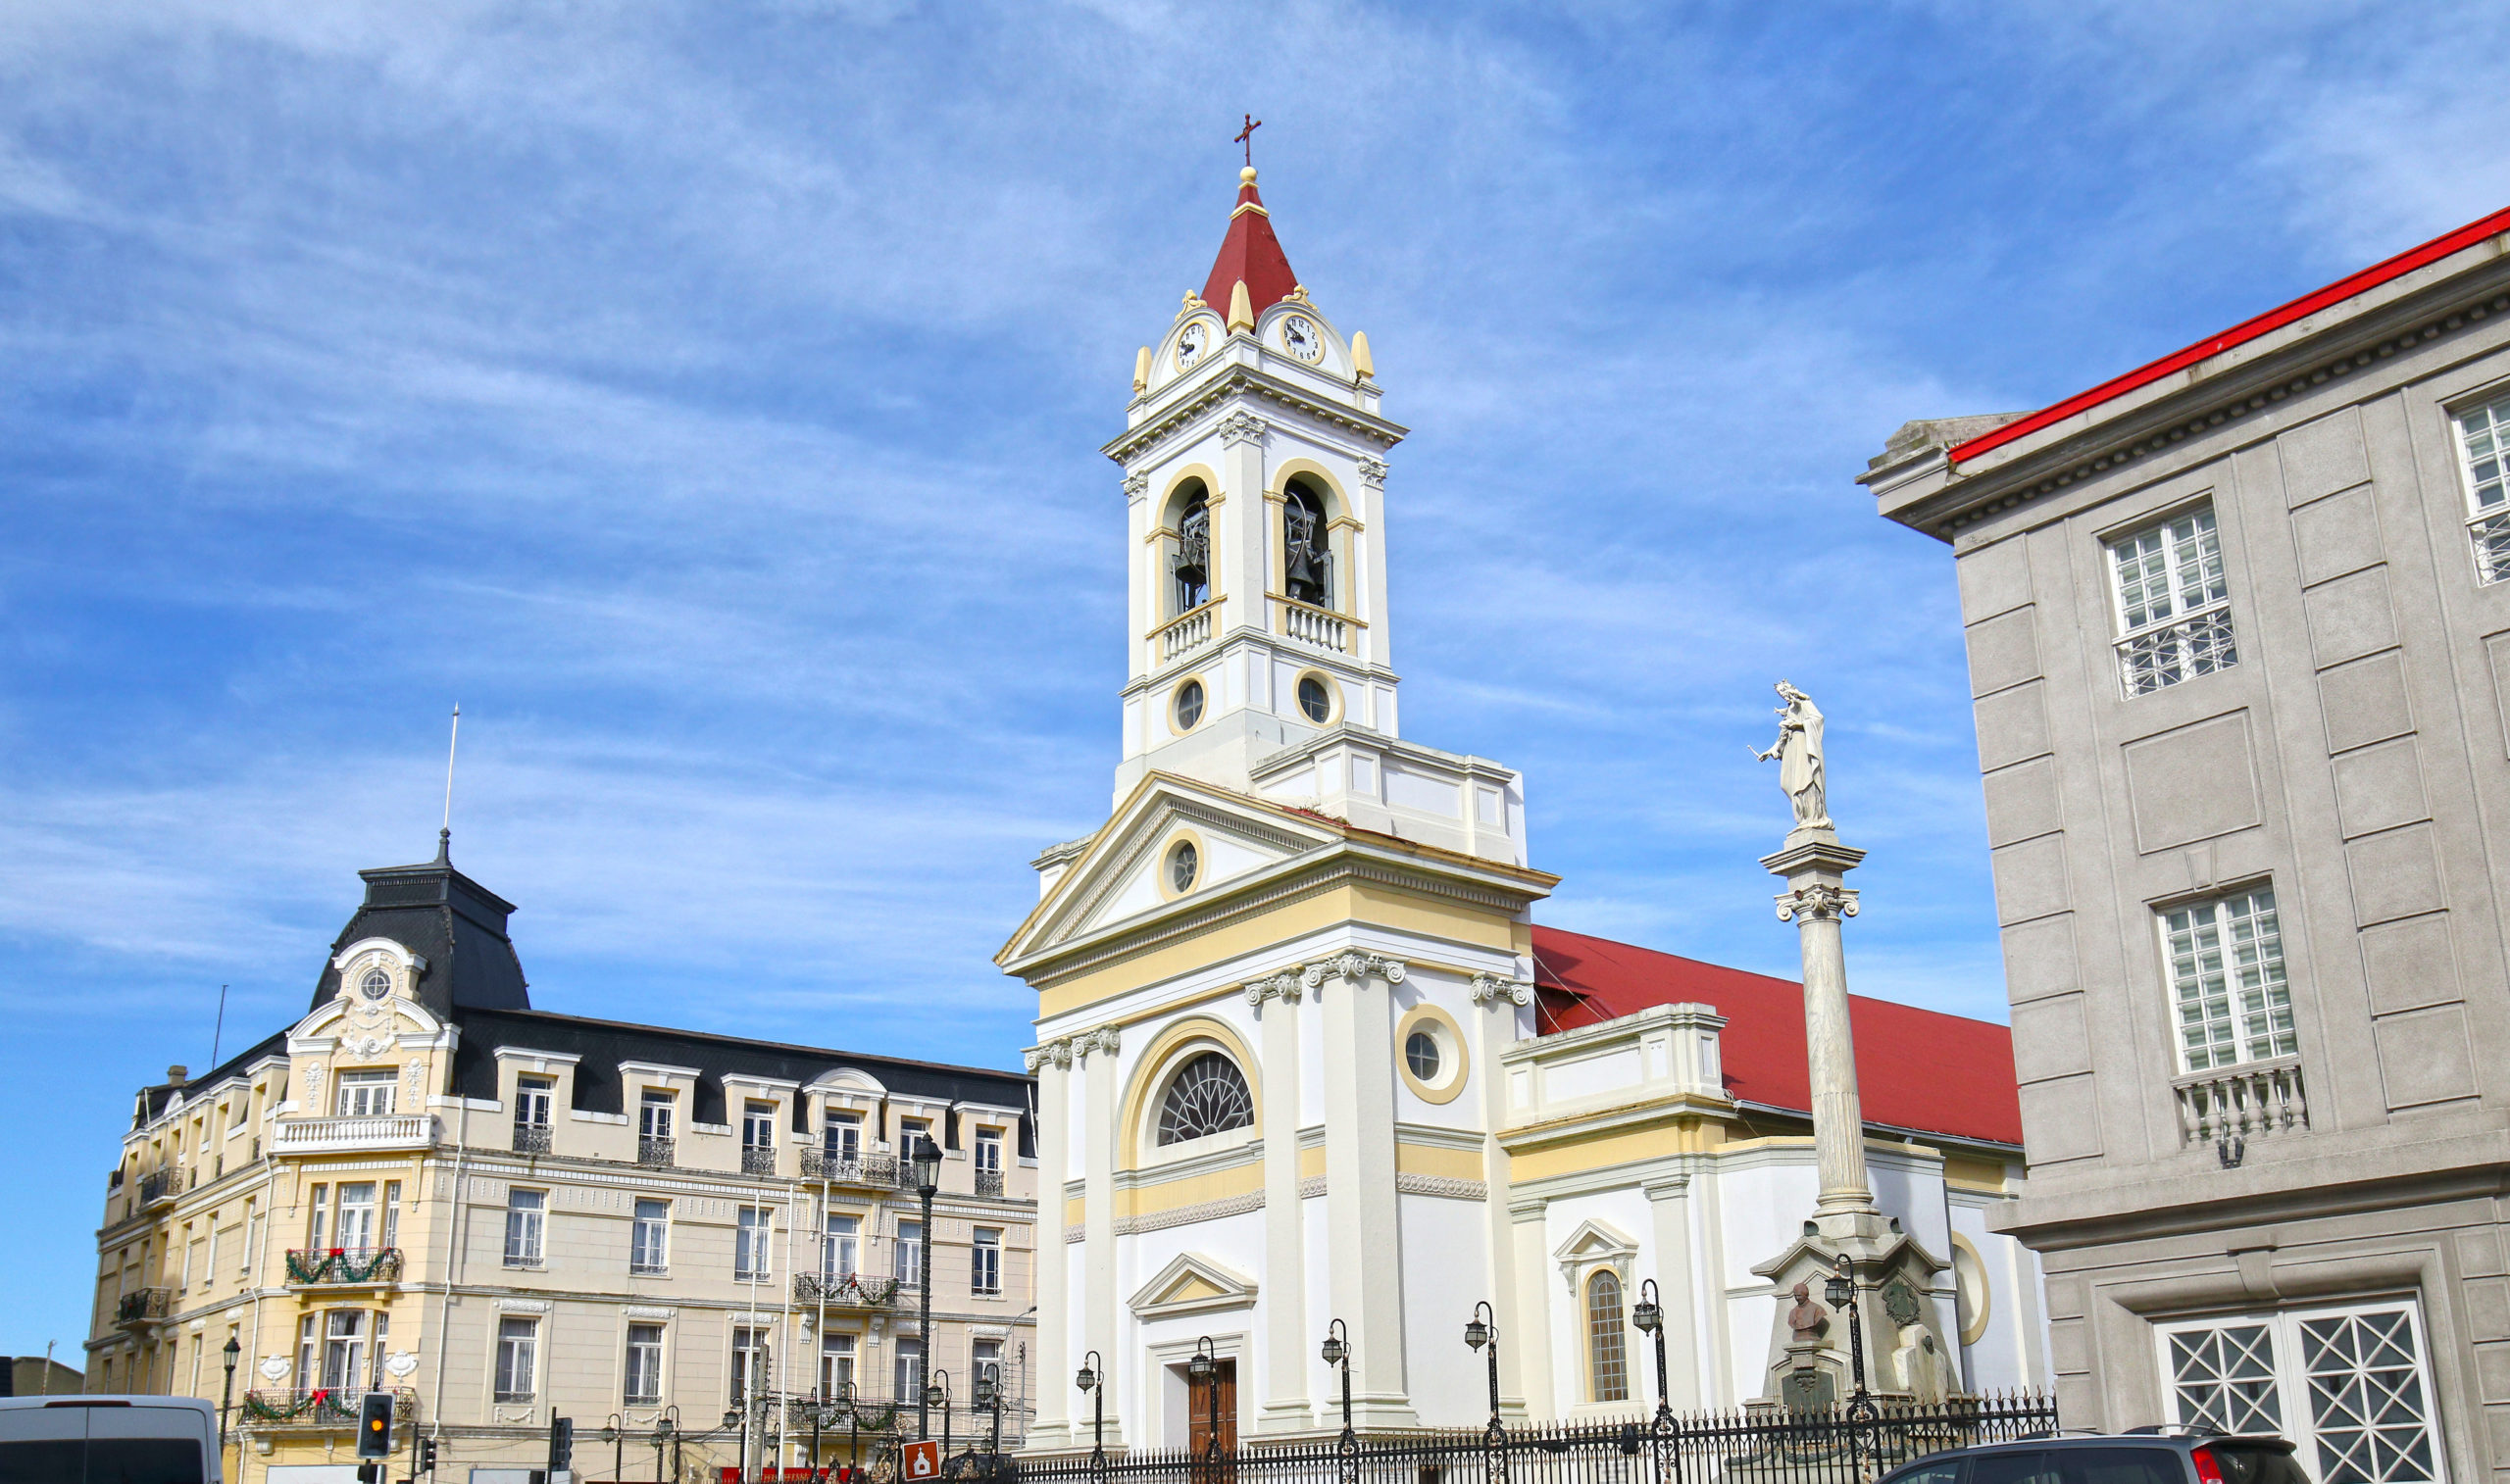 Cathédrale du Sacré-Cœur (Cathédrale du Sacré-Cœur) sur la Plaza Munoz Gamero, Punta Arenas, Chili. Crédit photo: Birdiegal/ 123Rf